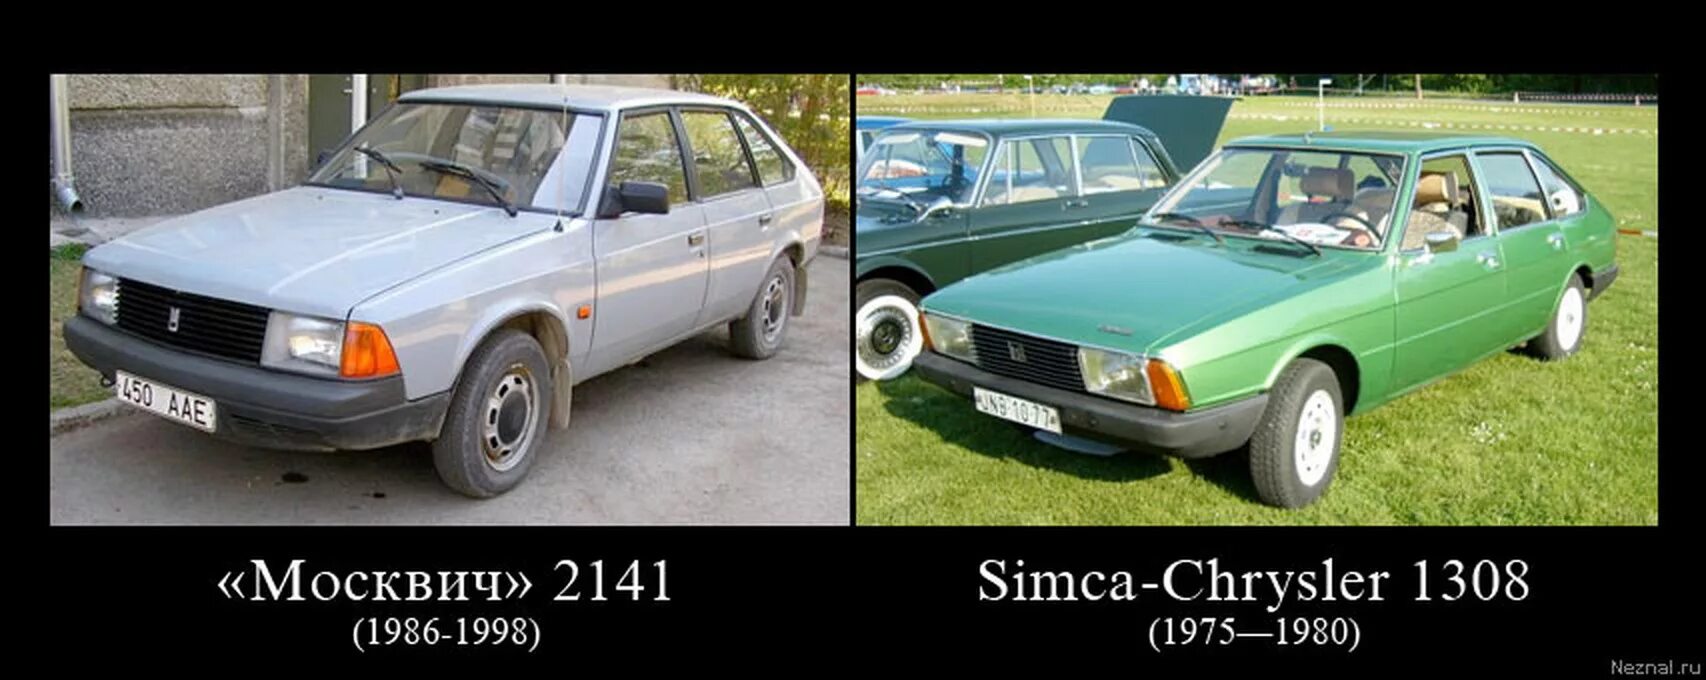 Москвич 2141 это копия. Советский автомобиль Москвич 2141. Машина похожая на Москвич 2141. Советский плагиат